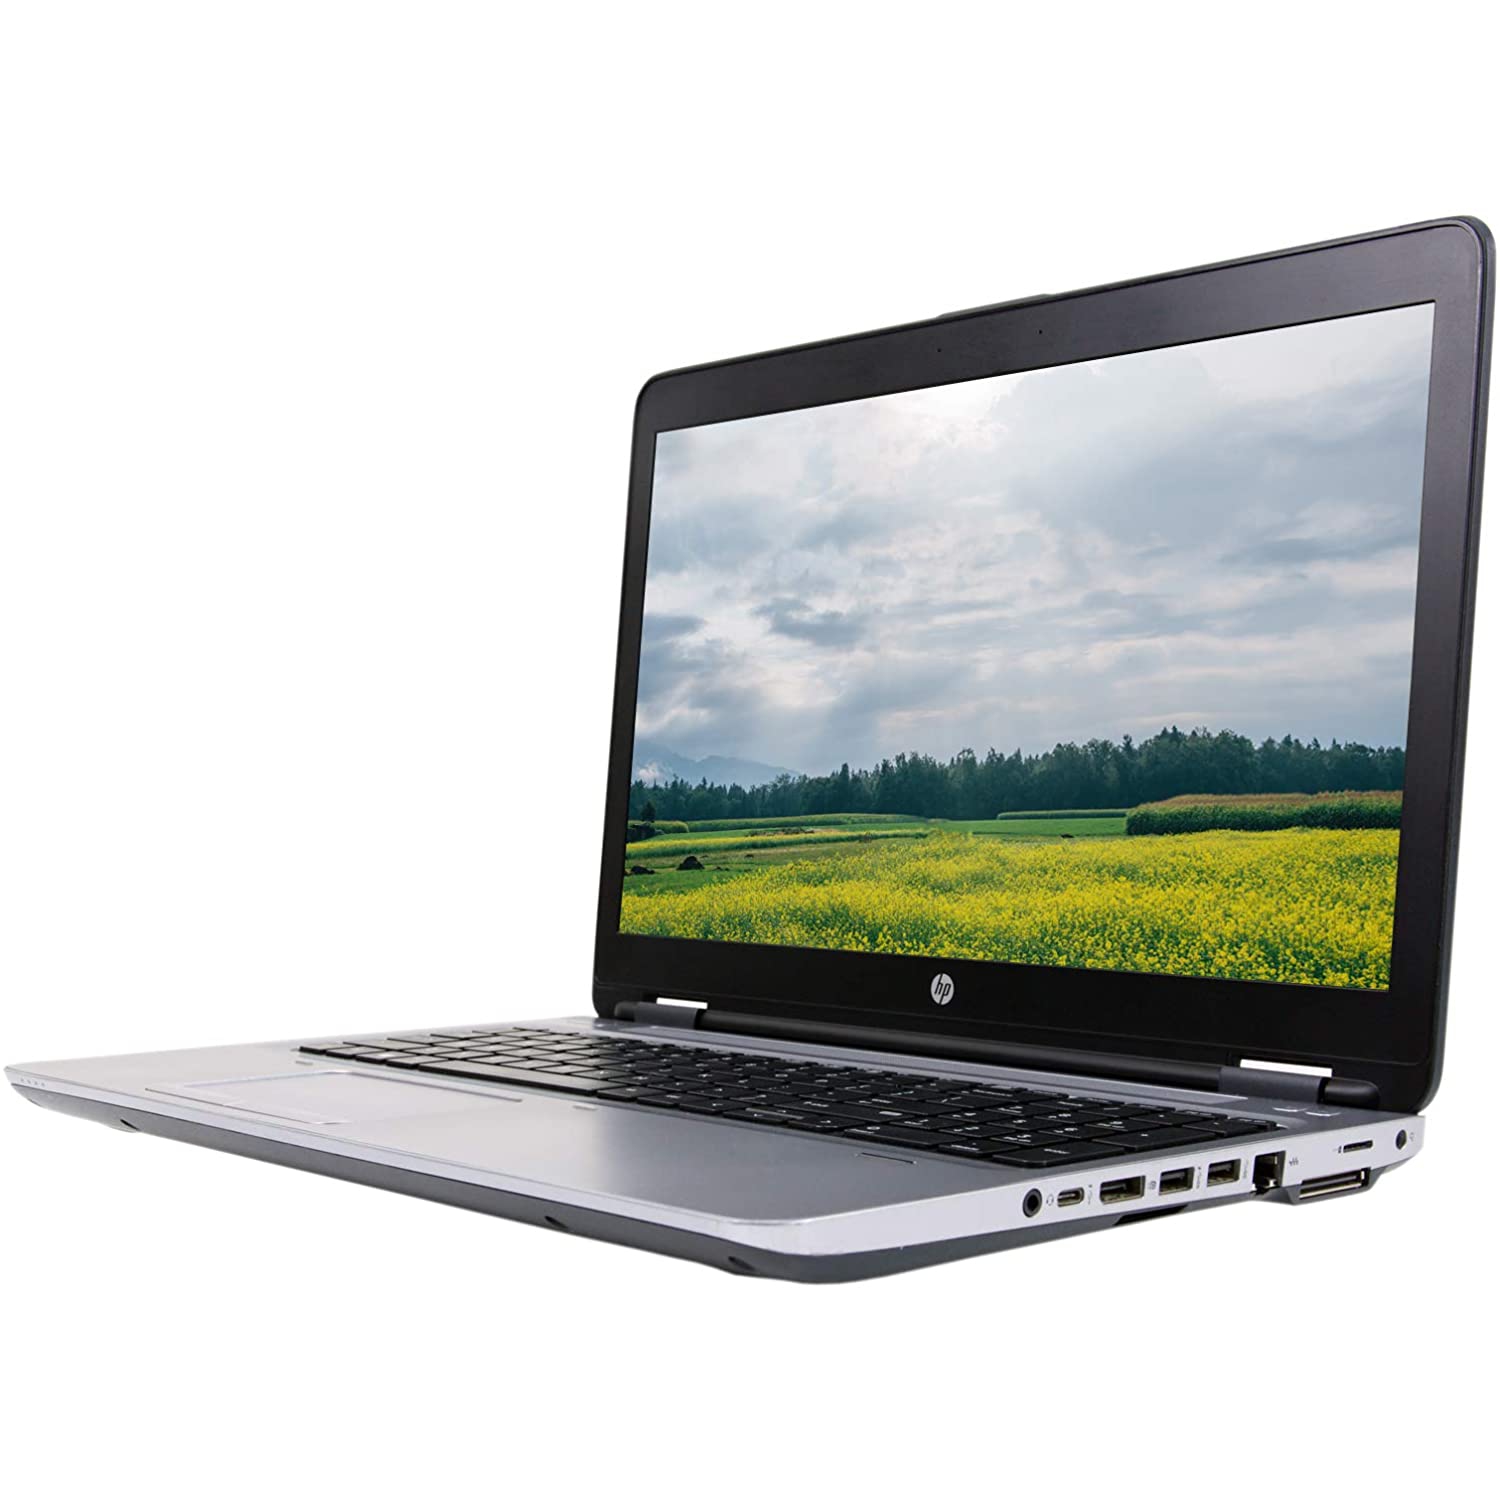 Refurbished (Good) - HP ProBook 650 G2 15.6"- i7- 6820HQ @ 2.7GHz - 8GB RAM , 240GB SSD, Windows 10 Pro